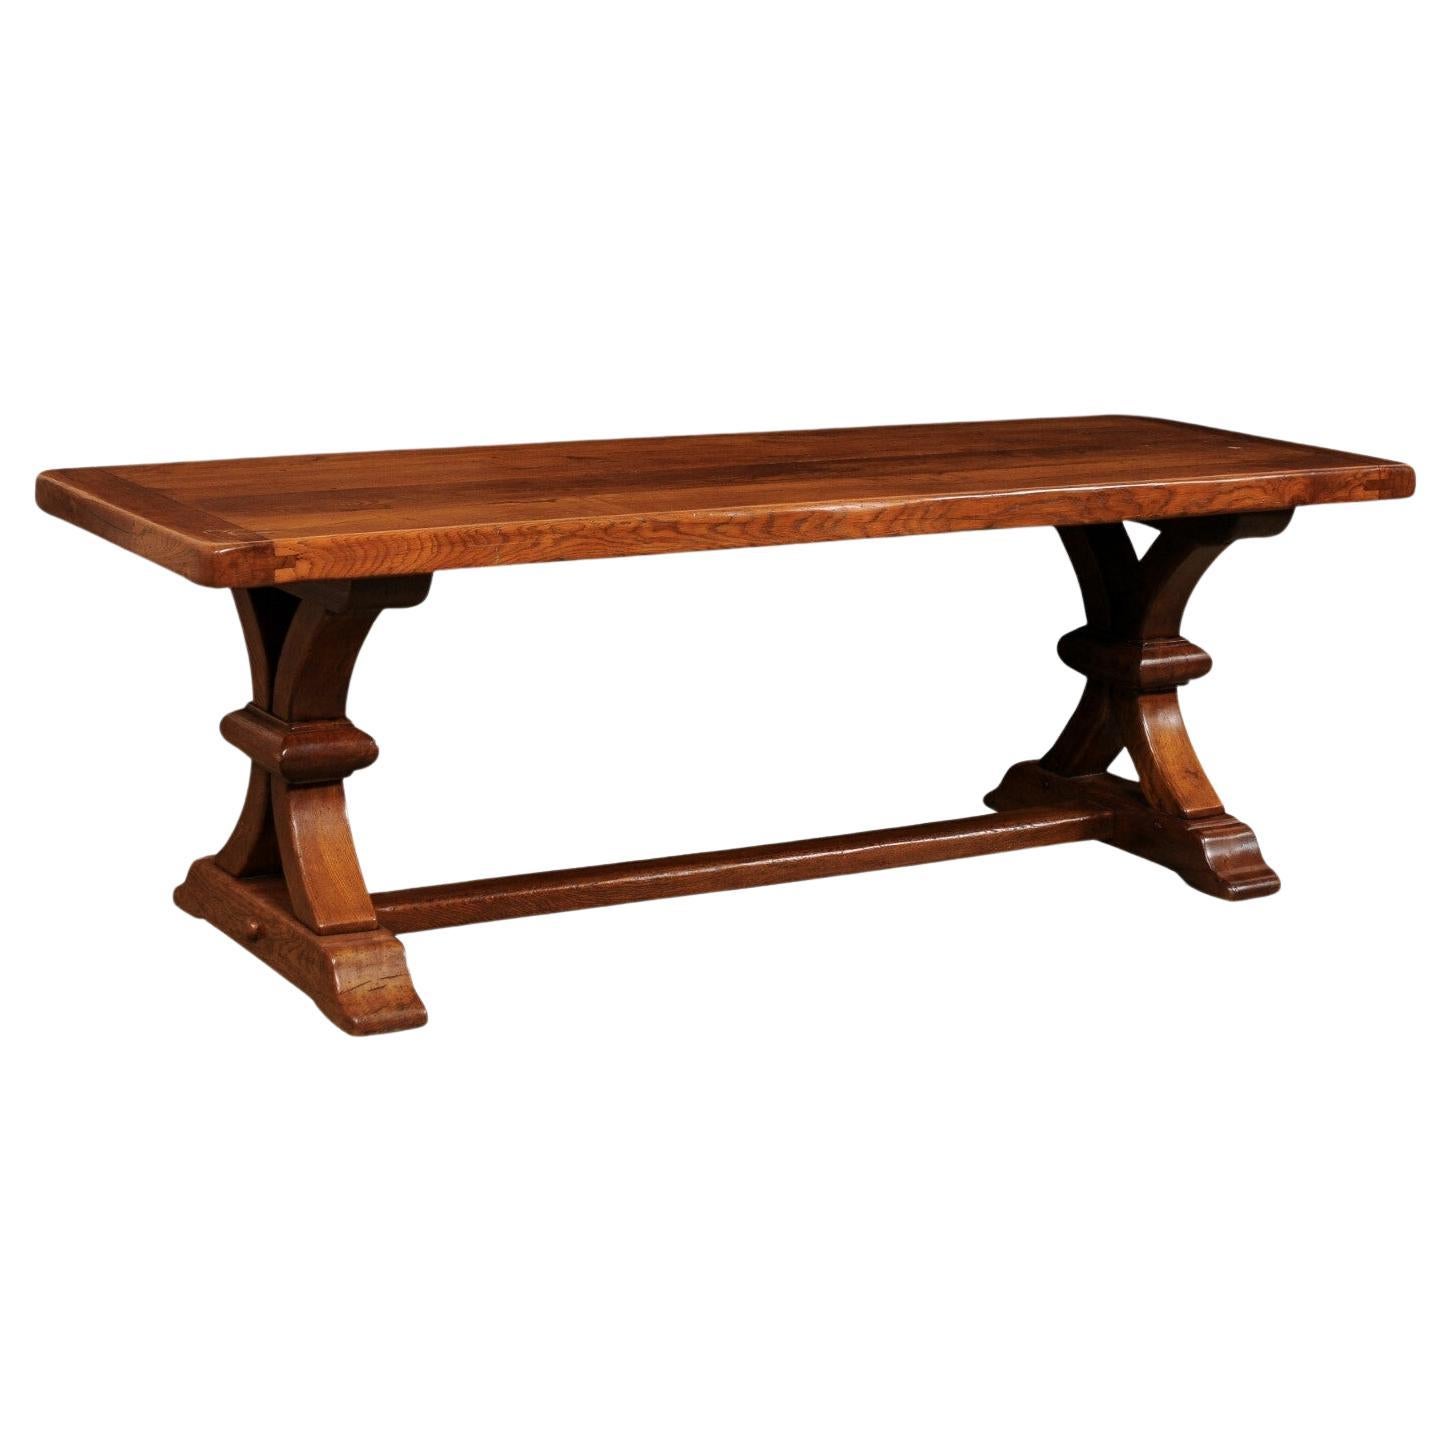 Ancienne table à manger en bois français avec pieds à tréteaux joliment sculptés, 7+ Ft de long